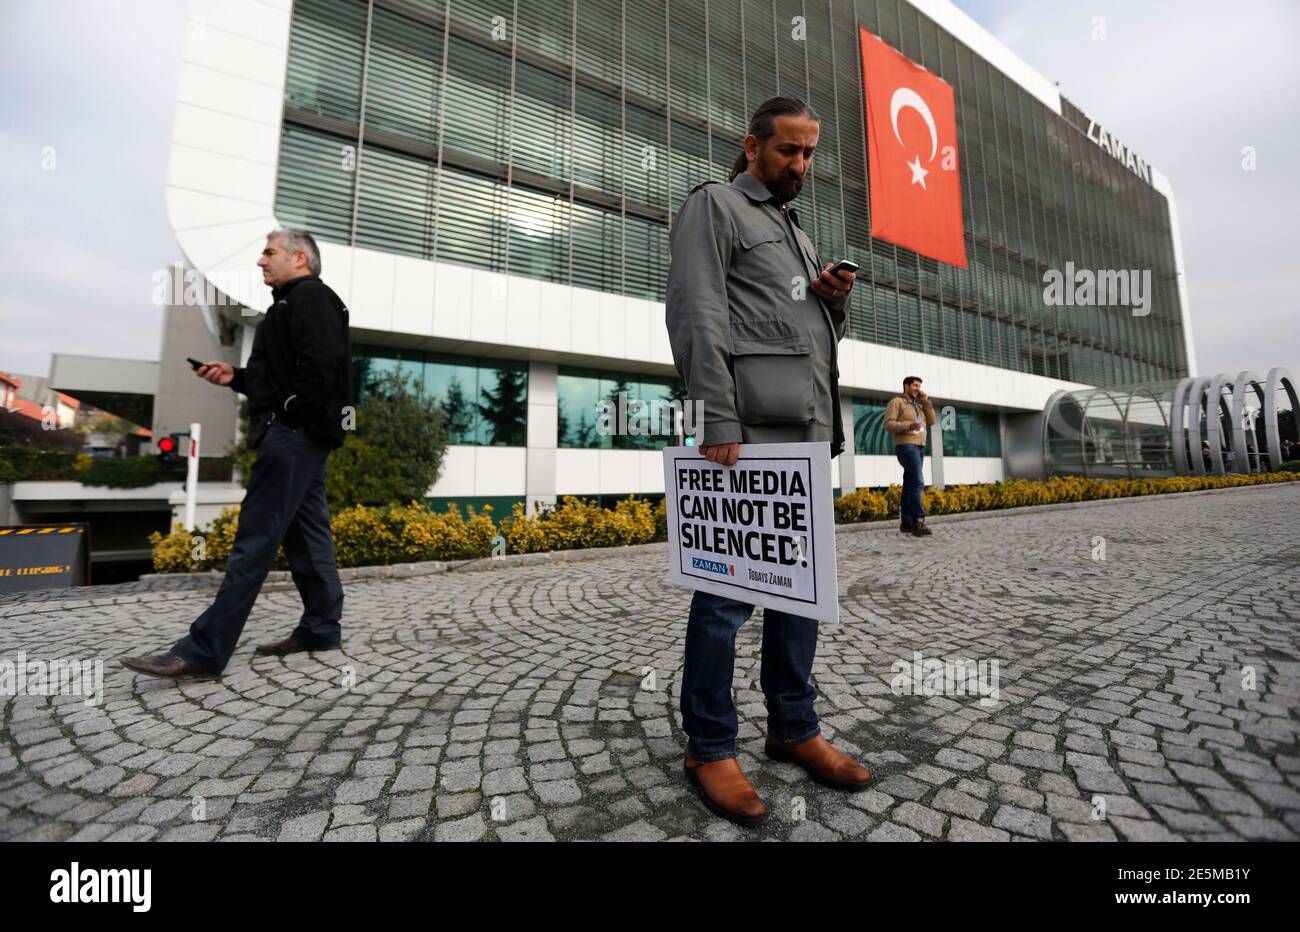 Zaman Media Gruppe Journalist hält einen Banner steht er vor dem Sitz der Tageszeitung Zaman in Istanbul 14. Dezember 2014. Türkische Polizei durchsuchte ein Fernsehsender und eine Zeitung in der Nähe von US-amerikanischen muslimischer Geistlicher Fethullah Gulen am Sonntag, einige Leute verhaften, sagte Medienberichten zufolge, zwei Tage nachdem Präsident Tayyip Erdogan signalisiert eine frische Kampagne gegen Gulens Anhänger. Eine Menge gesungen in den Istanbul-Büros der Zeitung Zaman als Editor vorgenommenen Ekrem Dumanli eine Rede zu ihnen übertragen live im Fernsehen, trotzig fordert Polizei, um ihn festzunehmen. REUTERS/Murad Sezer (TURK Stockfoto